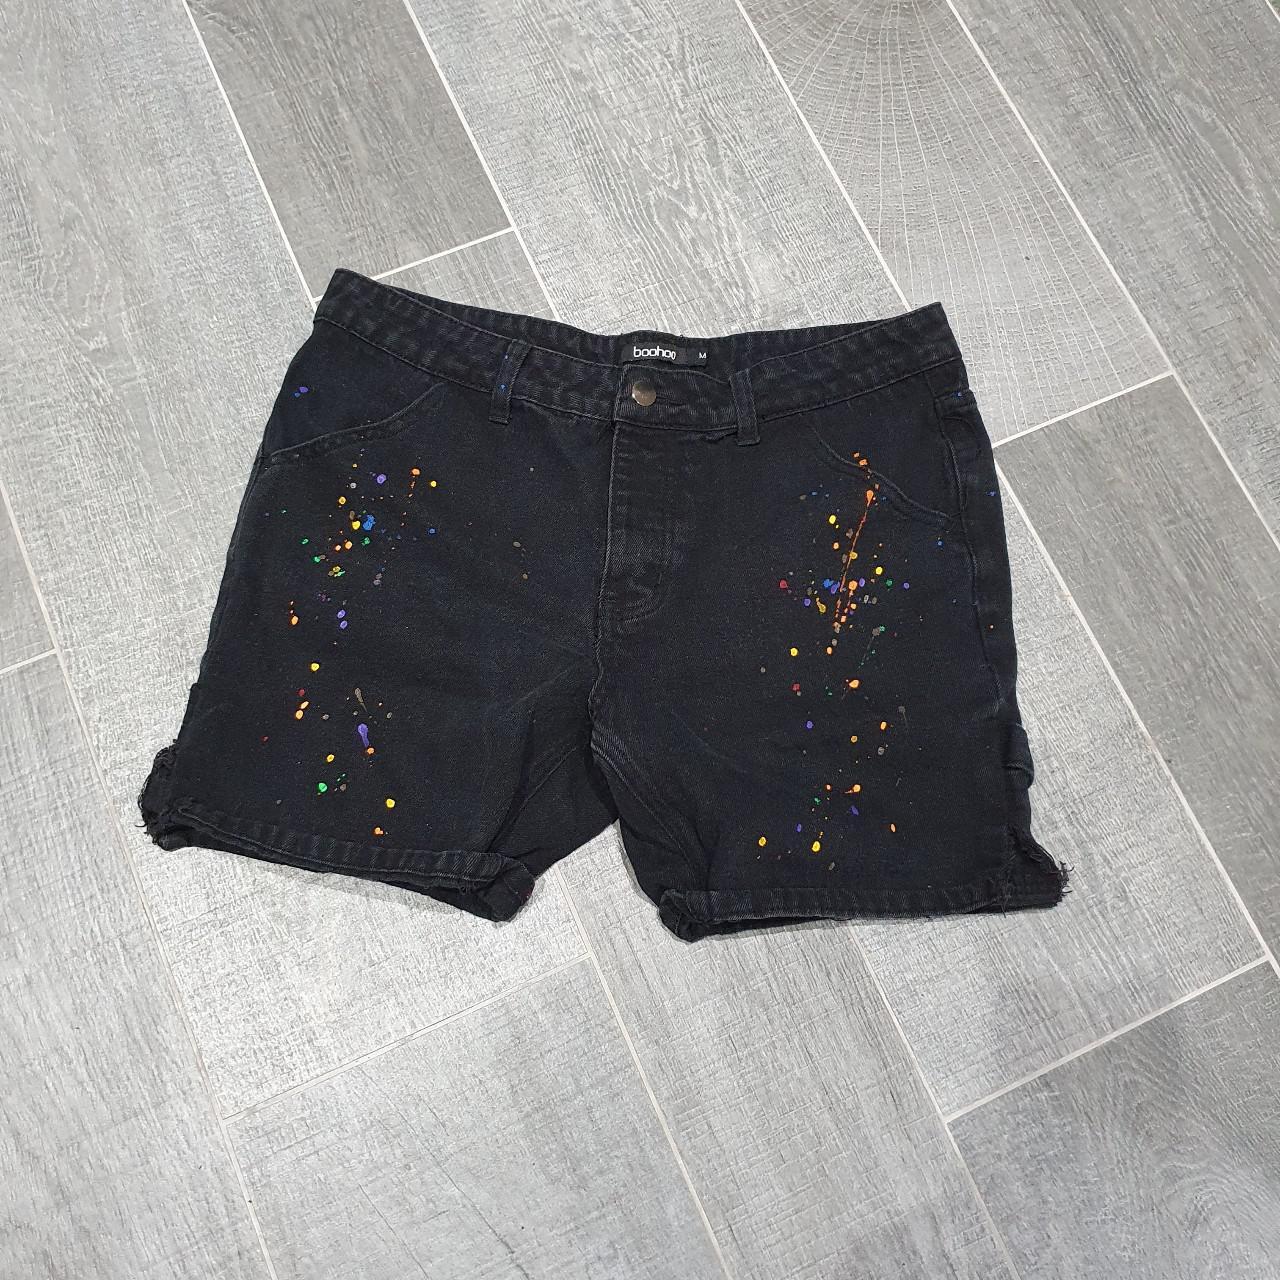 Boohoo Men's multi Shorts | Depop